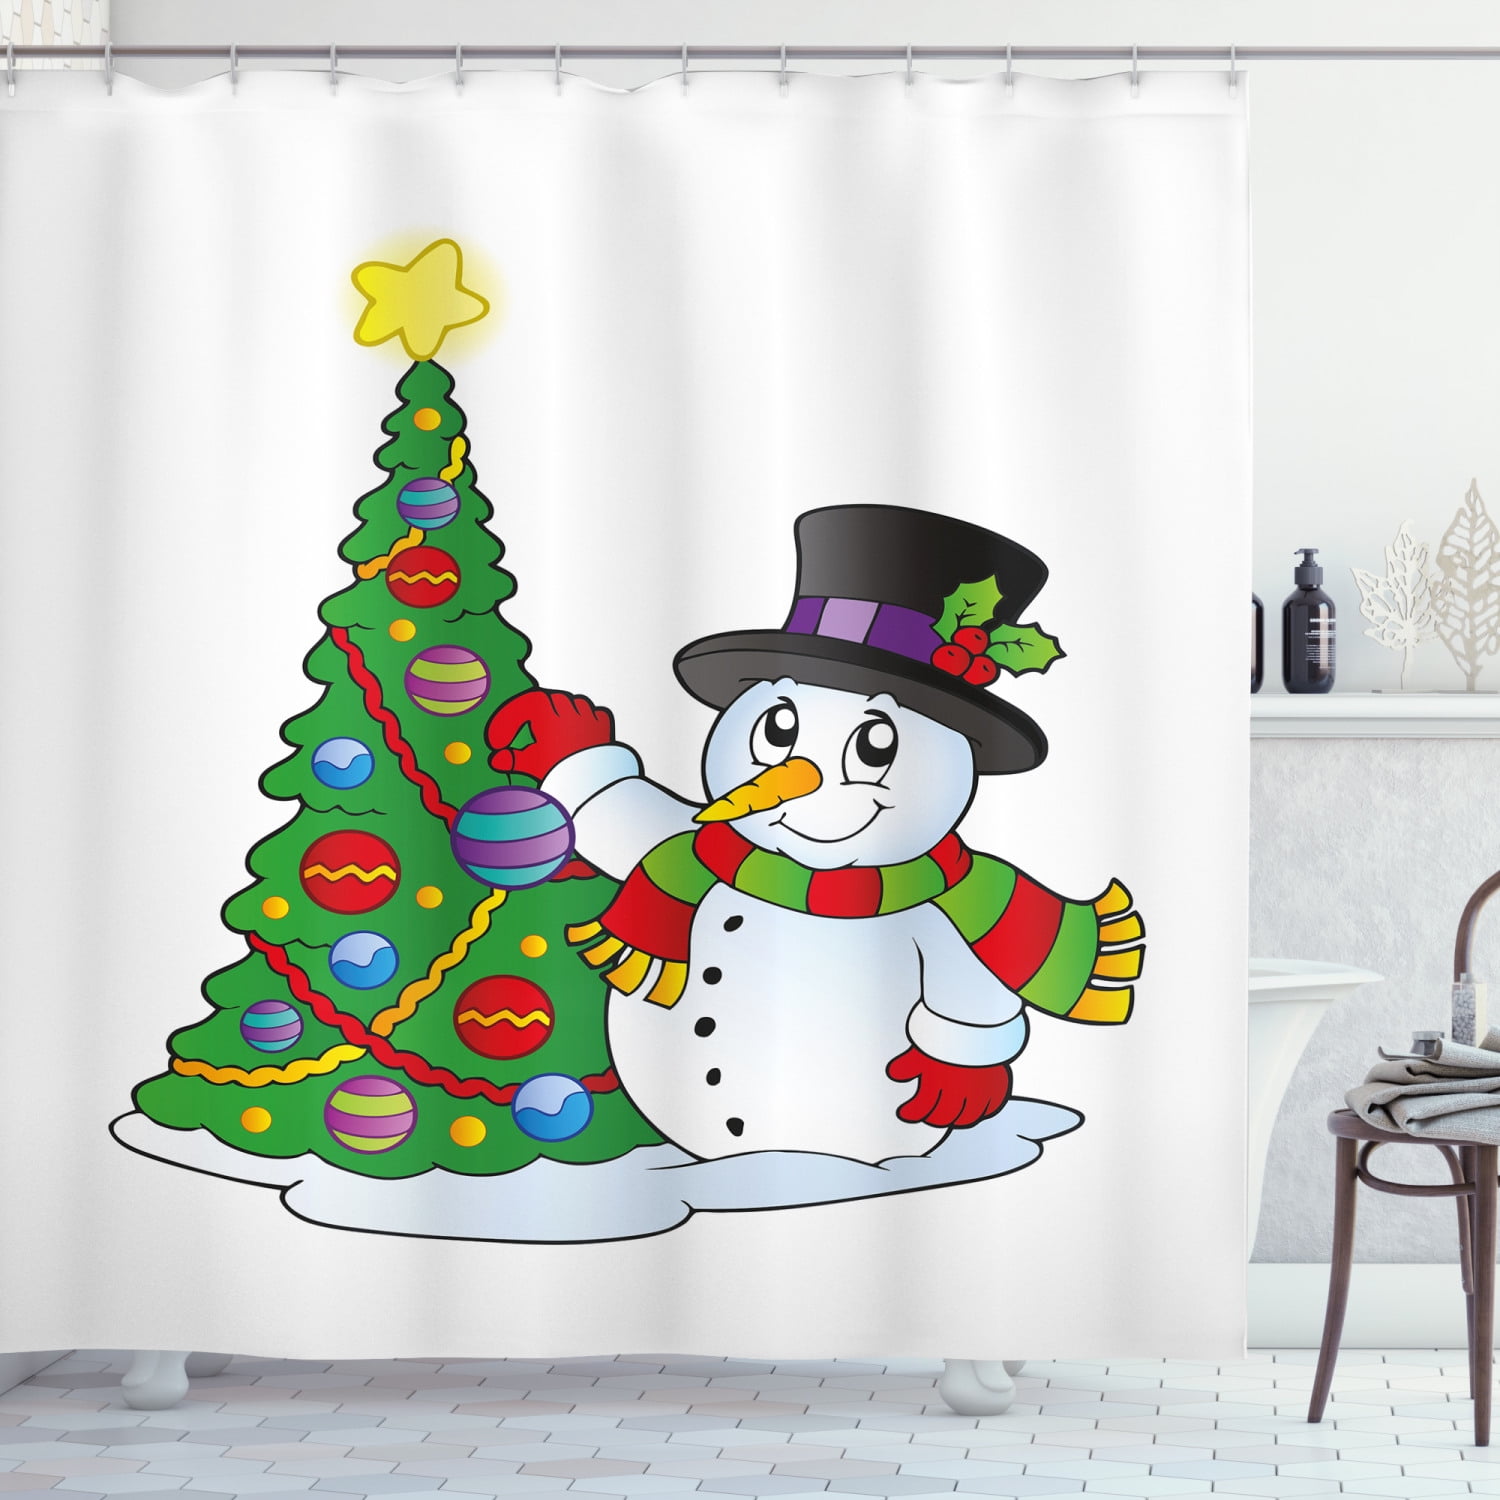 Christmas snowman and holly fruit Shower Curtain Bathroom Decor Fabric & 12hooks 